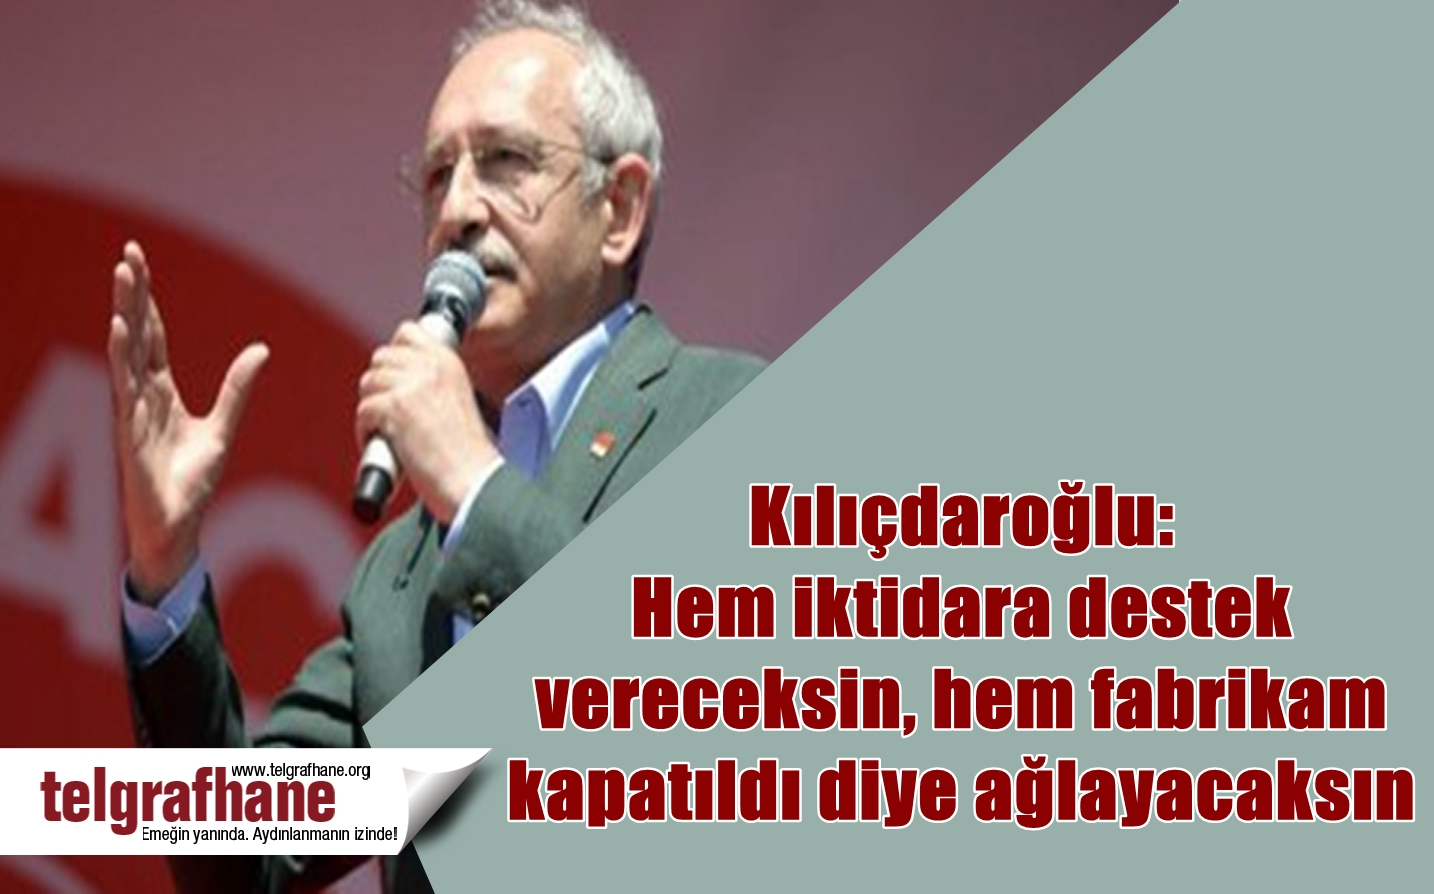 Kılıçdaroğlu: Hem iktidara destek vereceksin, hem fabrikam kapatıldı diye ağlayacaksın